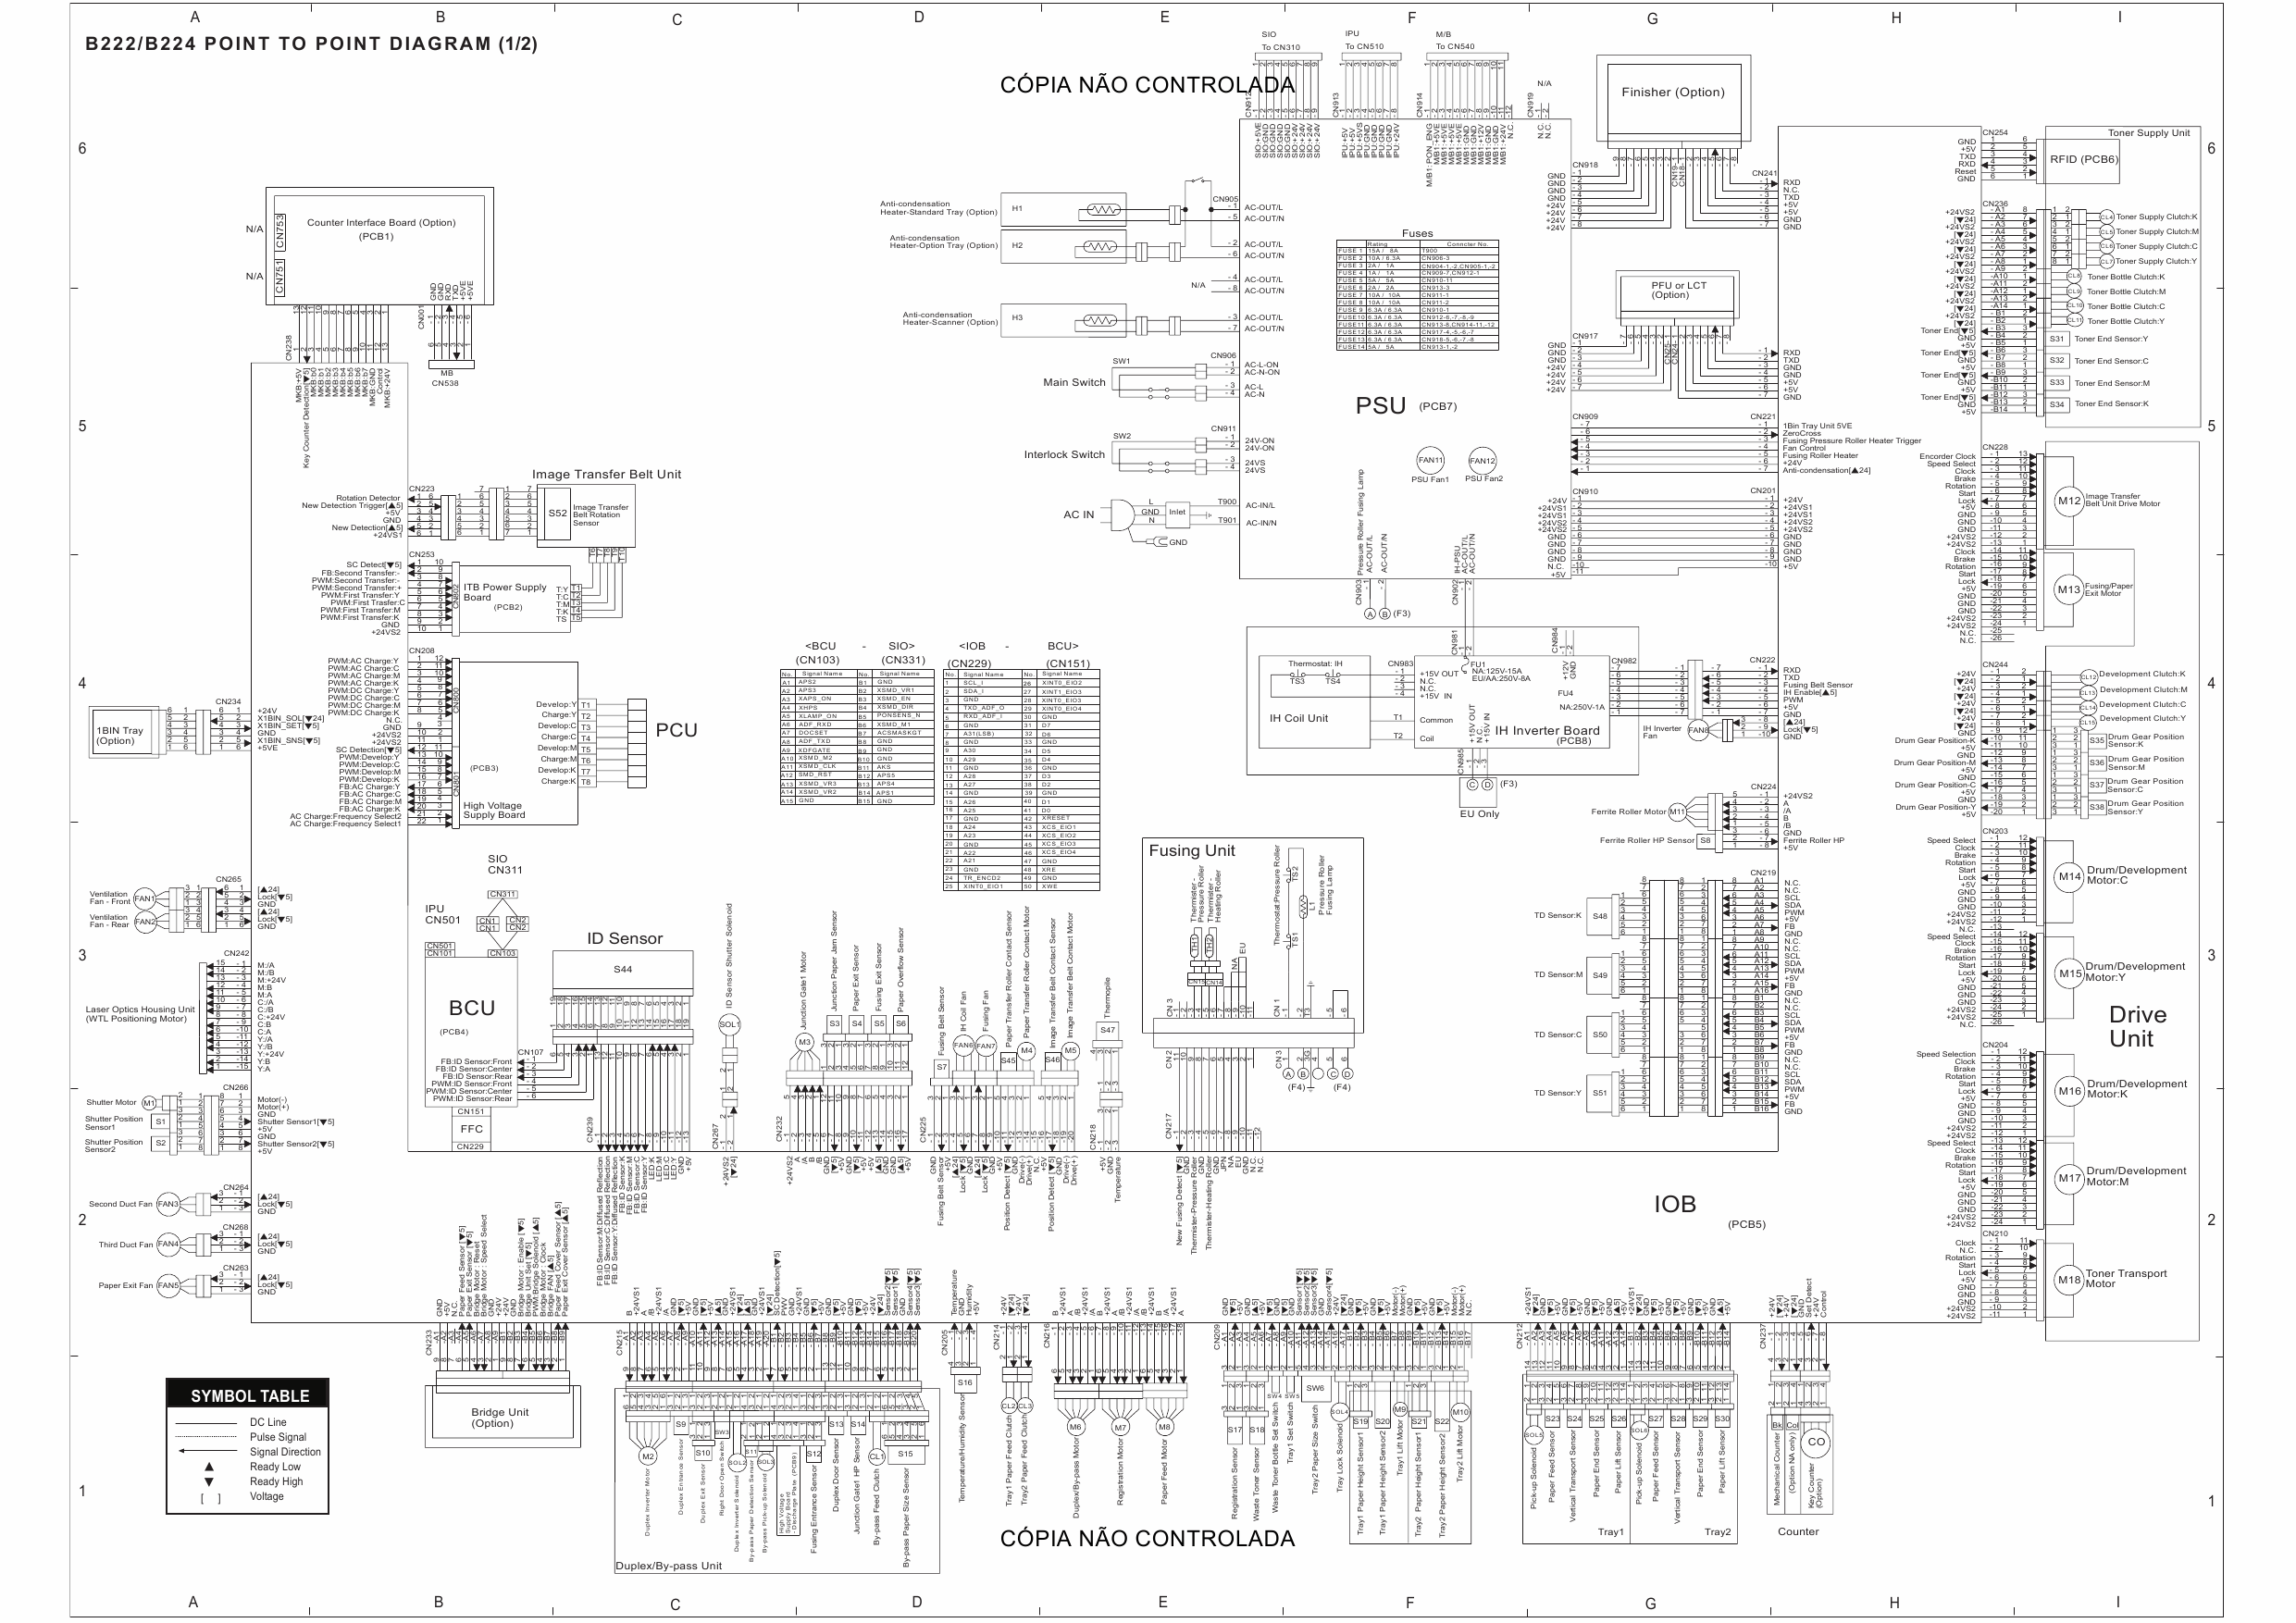 RICOH Aficio MP-C3500 C4500 B222 B224 Circuit Diagram-1